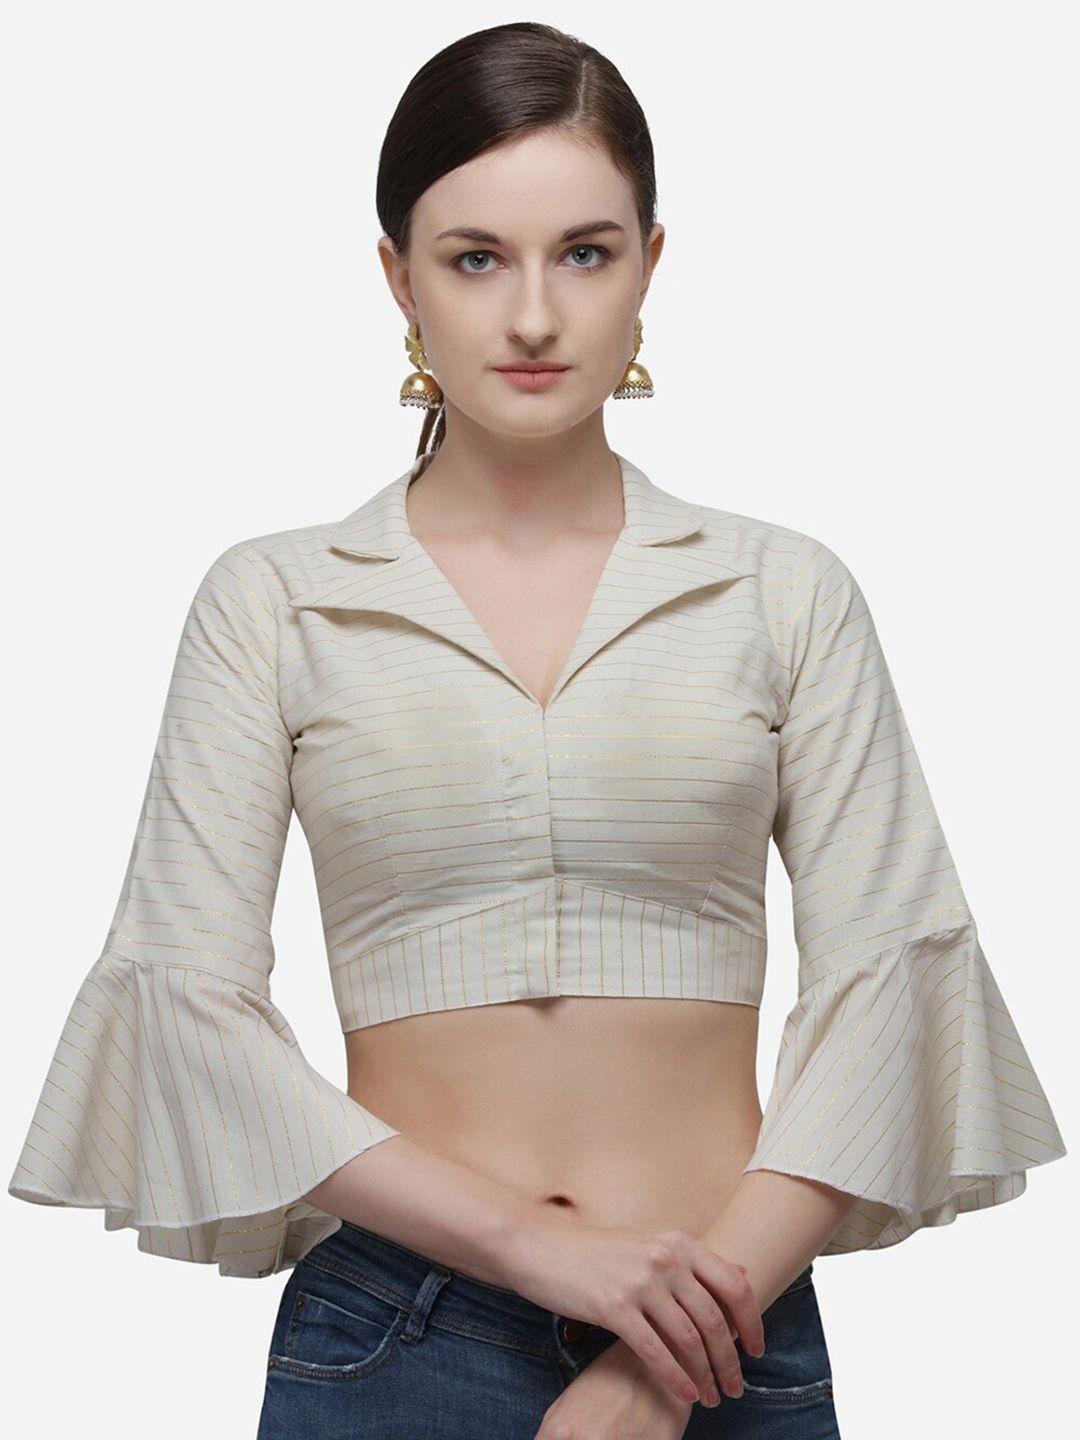 mitera  zari-design shirt collar neck saree blouse